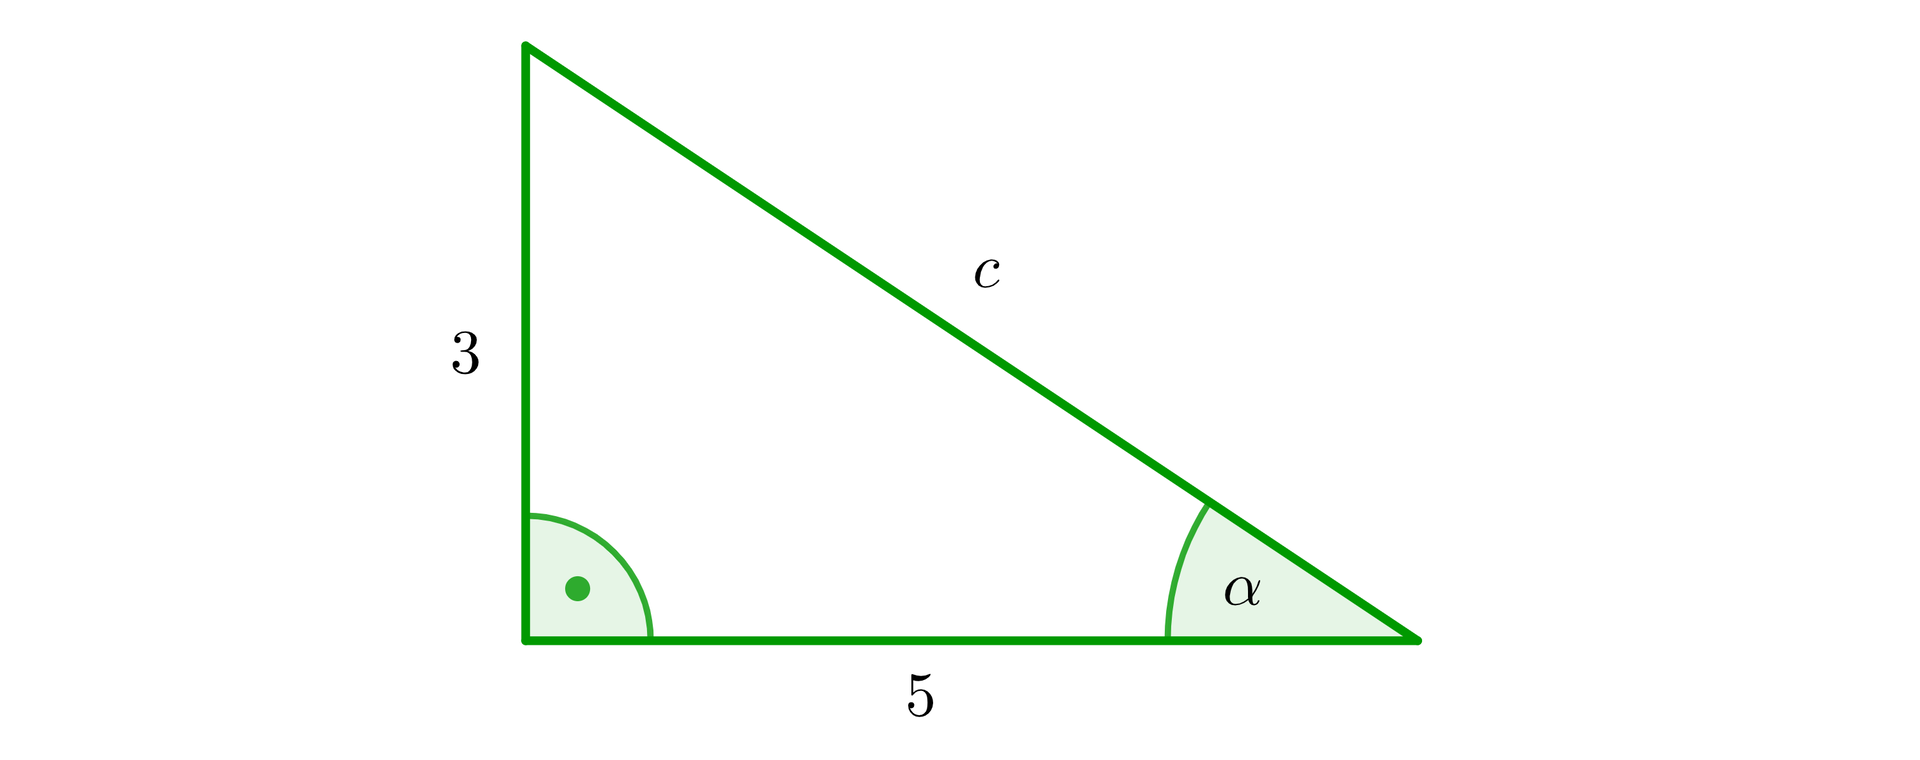 Rysunek przedstawia trójkąt prostokątny o podstawie o długości 5, pionowej przyprostokątnej o długości 3 oraz o przeciwprostokątnej c. Zaznaczono także dwa kąty wewnętrzne trójkąta. Kąt prosty między bokami o długościach 3 i 5 oraz kąt α między podstawą a przeciwprostokątną c.